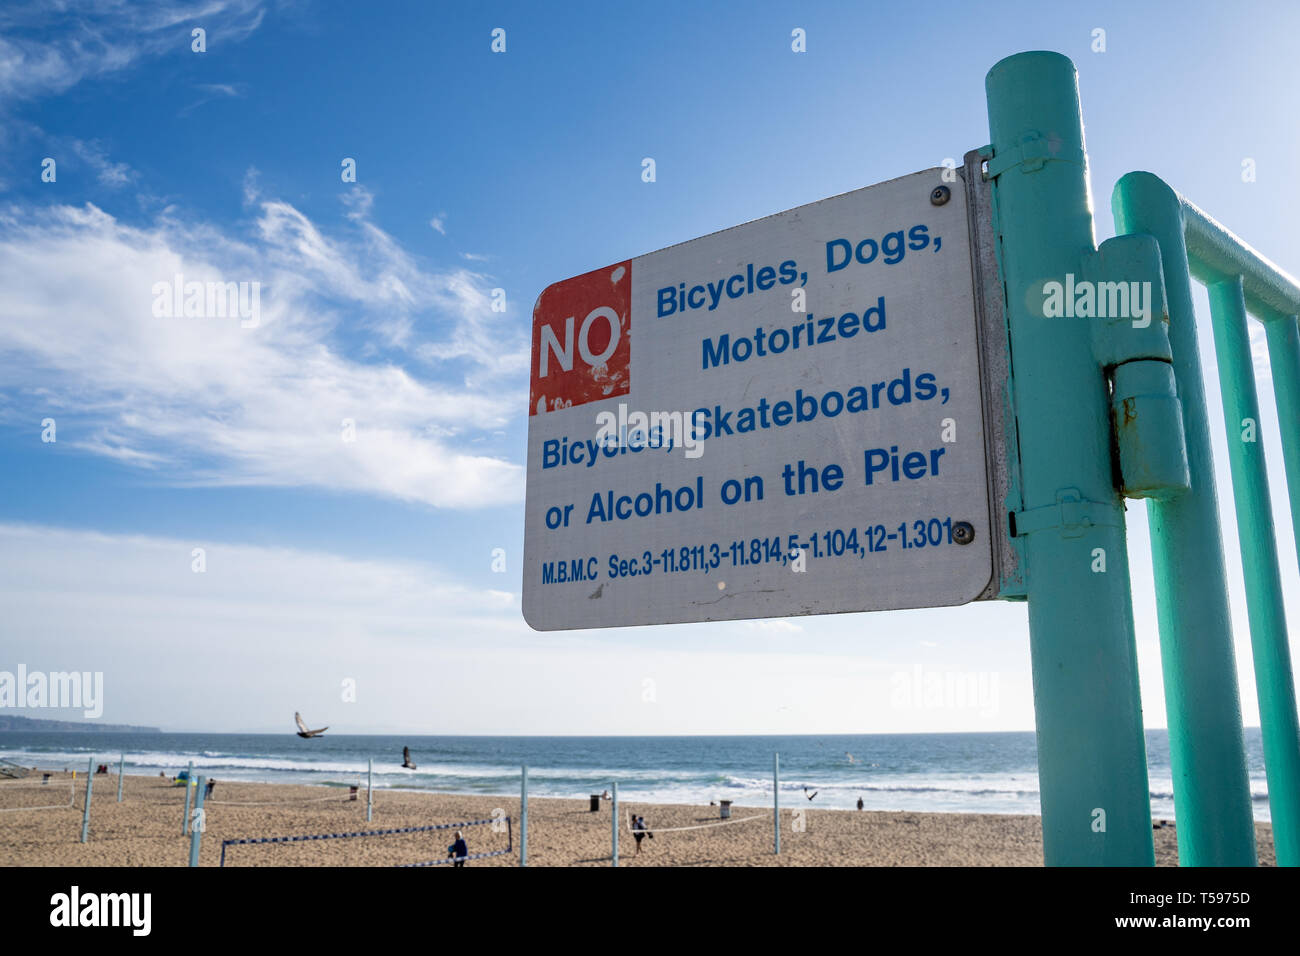 Manhattan Beach, California - Marzo 26, 2019: segno per le biciclette non, cani, veicoli motorizzati, skateboard o alcool sul molo, mediante ordinanza locale Foto Stock